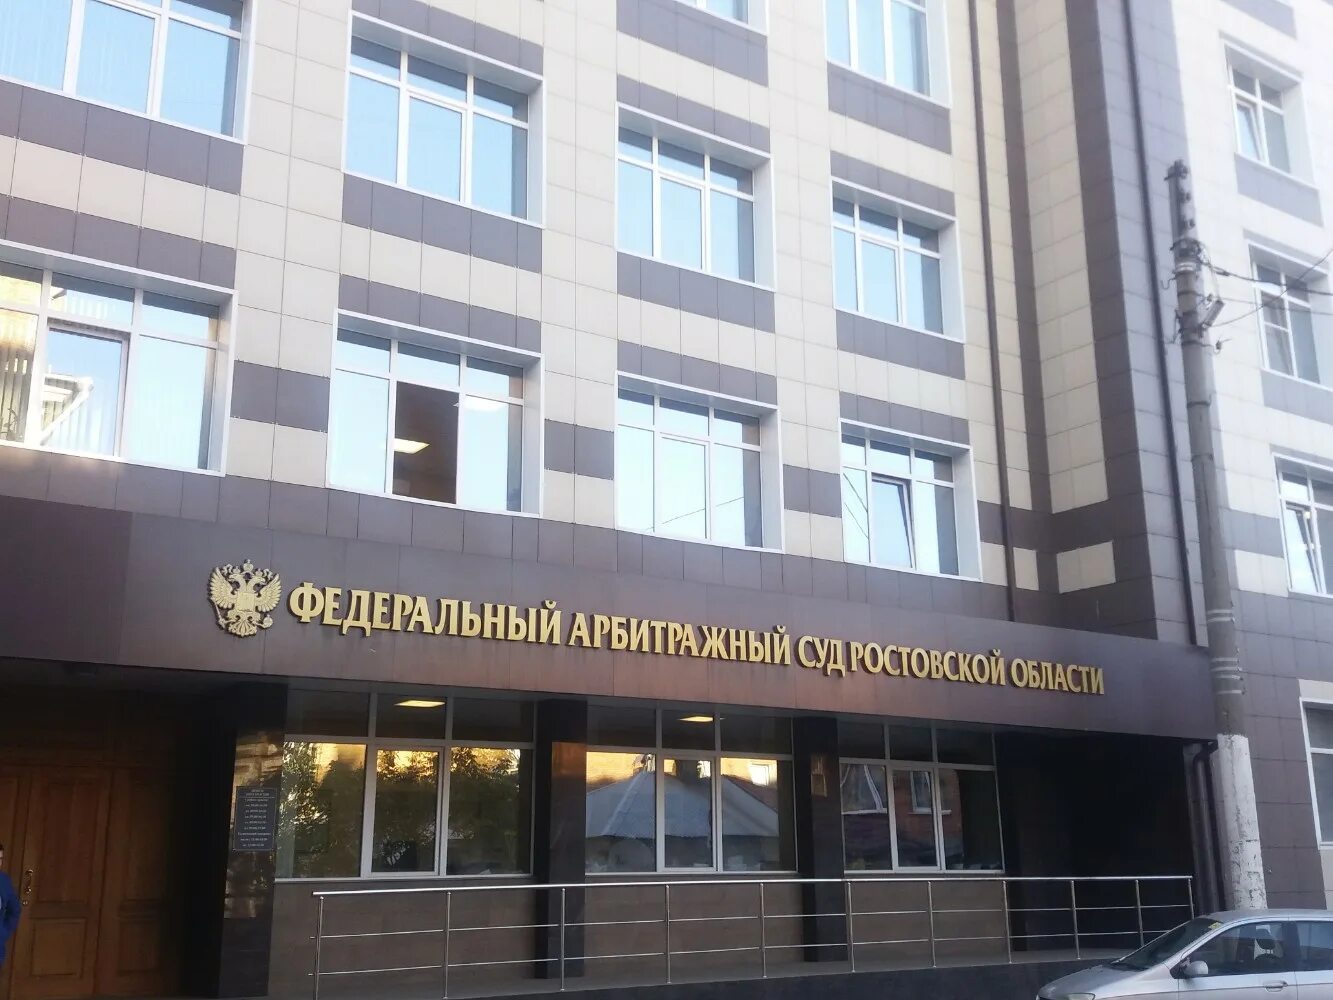 Арбитражного суда ростовской области